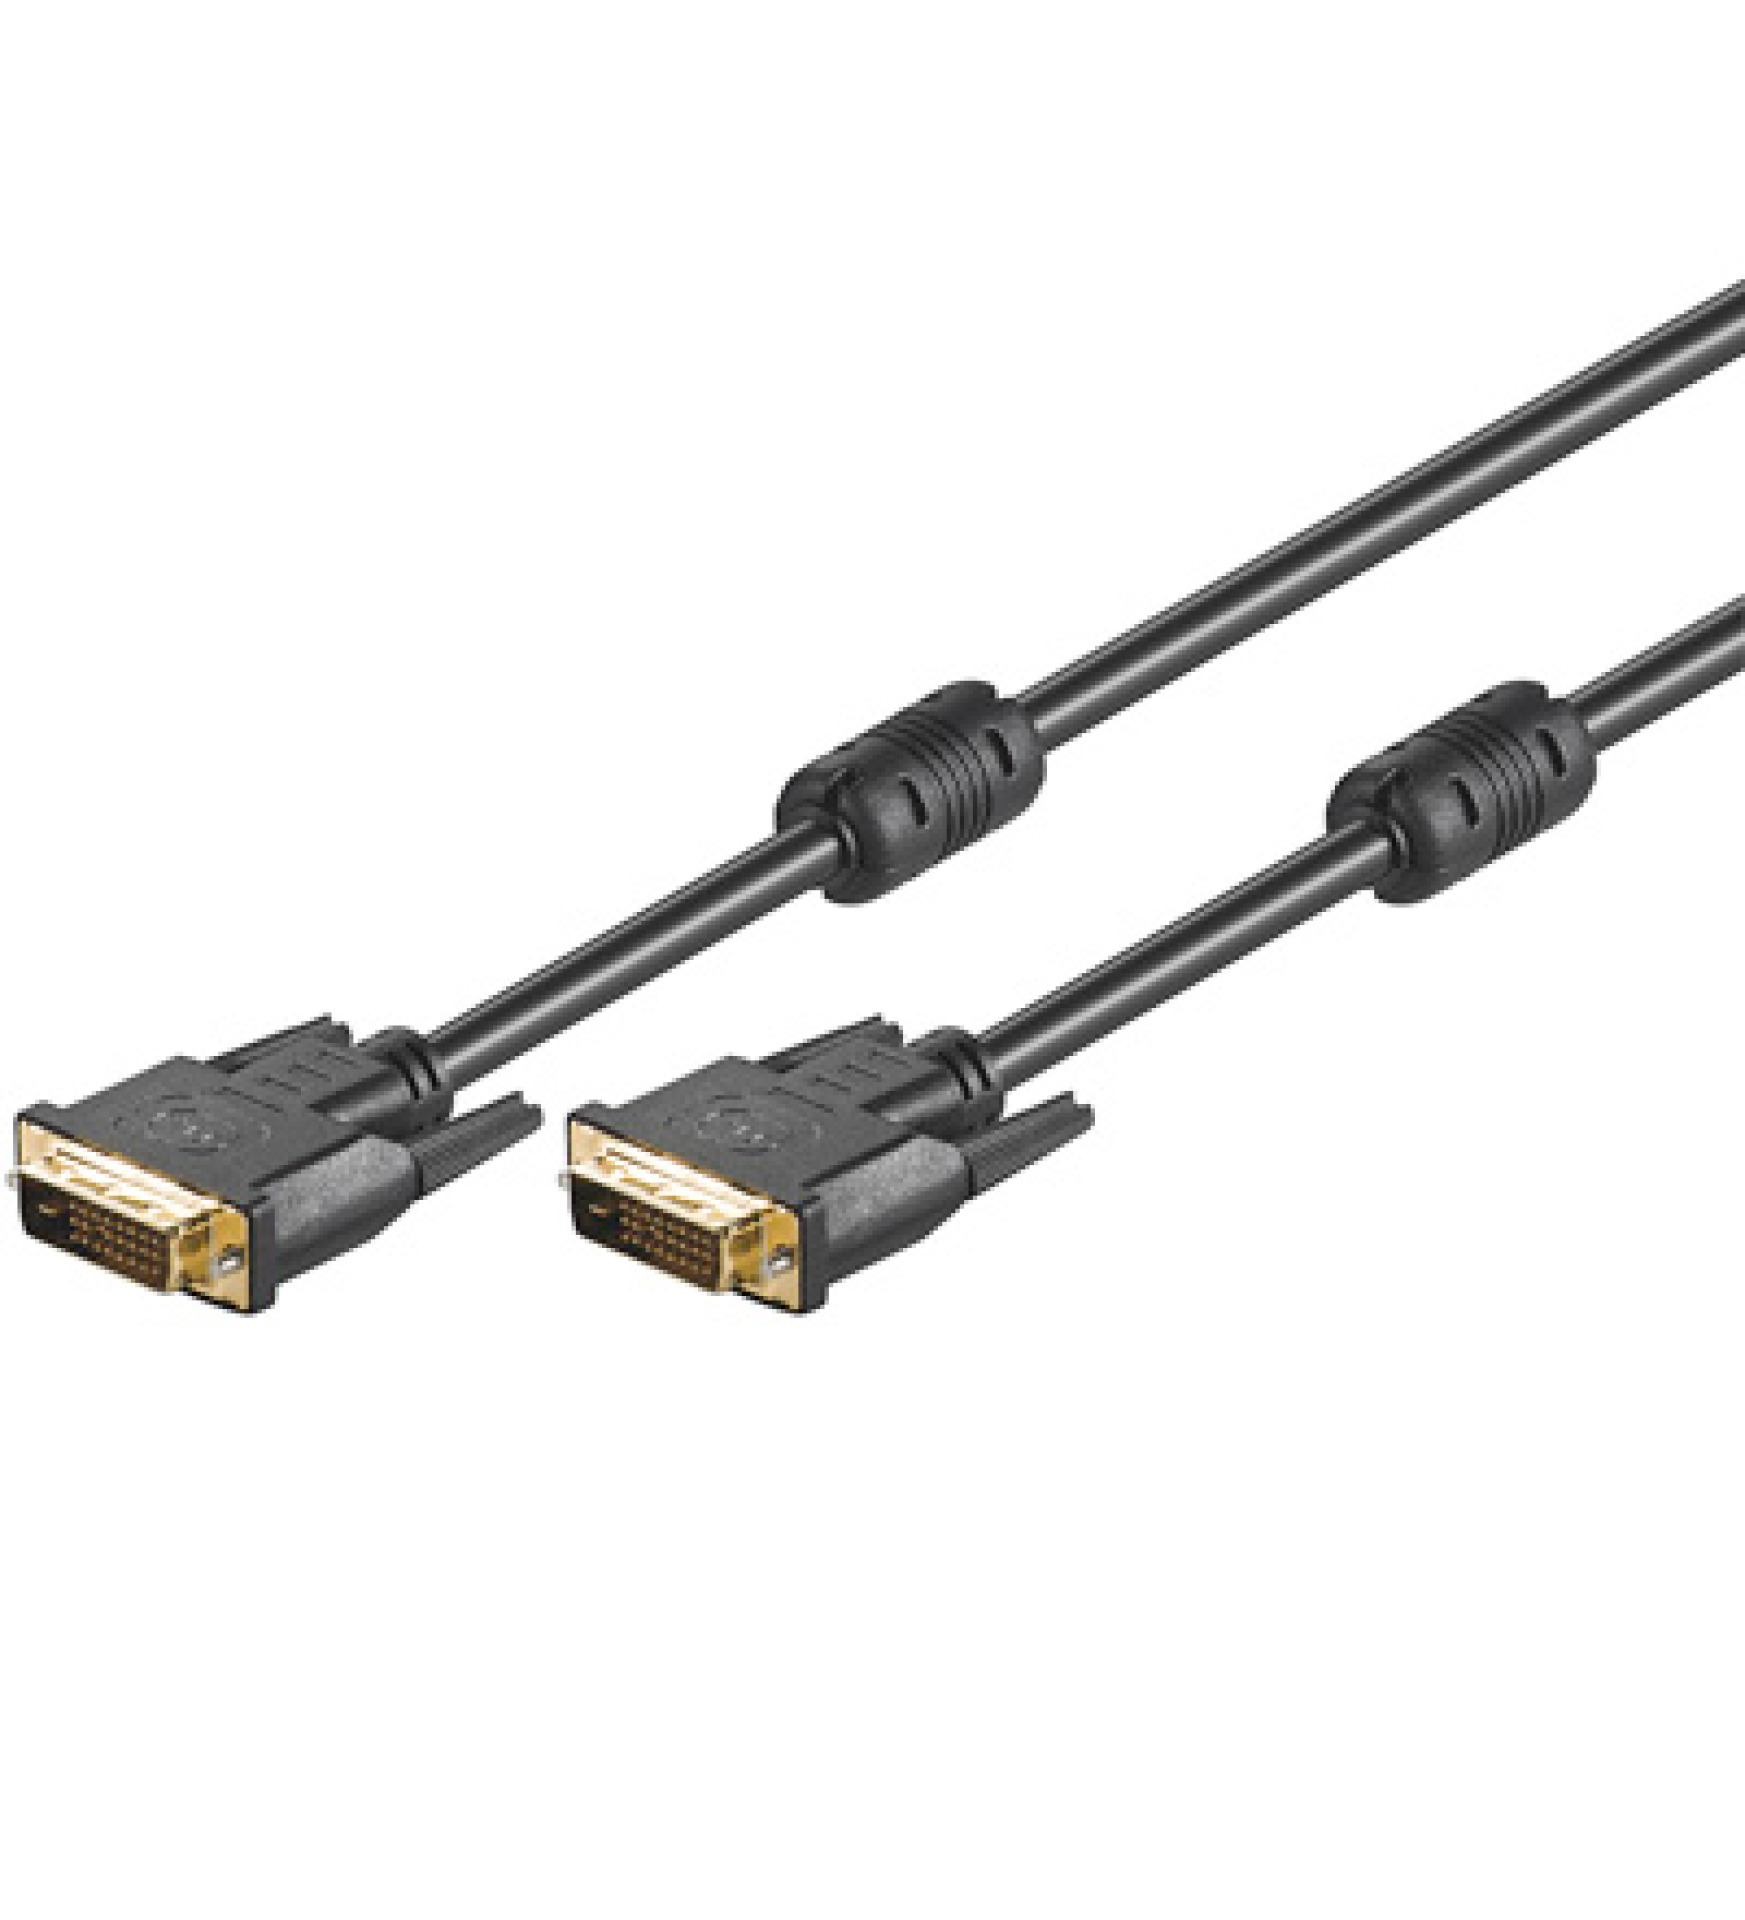 DVI-D Dual-Link Anschlusskabel Stecker/Stecker mit Ferrit, schwarz, 2 m